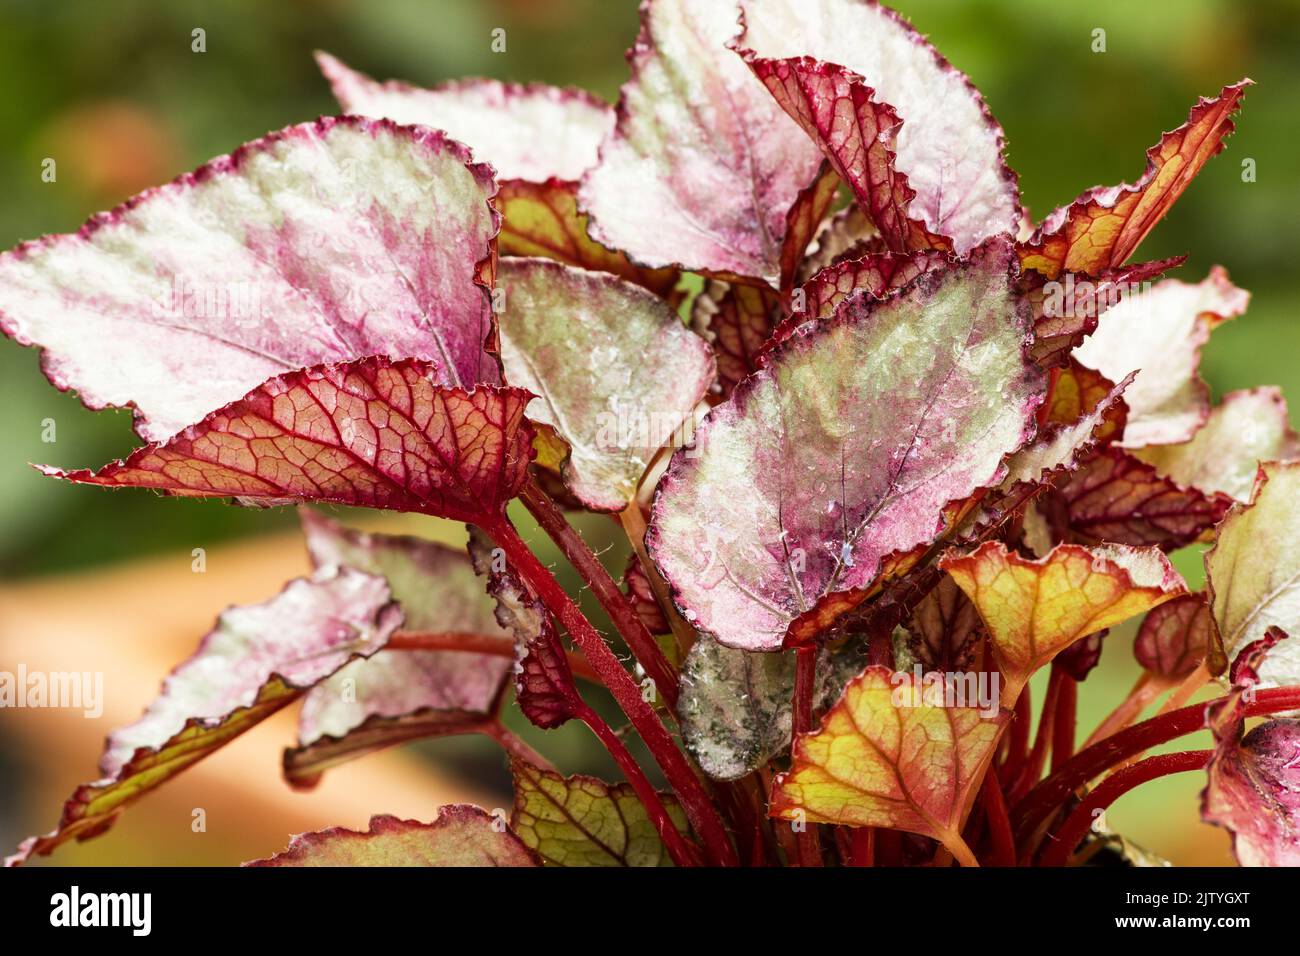 Begonia plant on natutal background Stock Photo